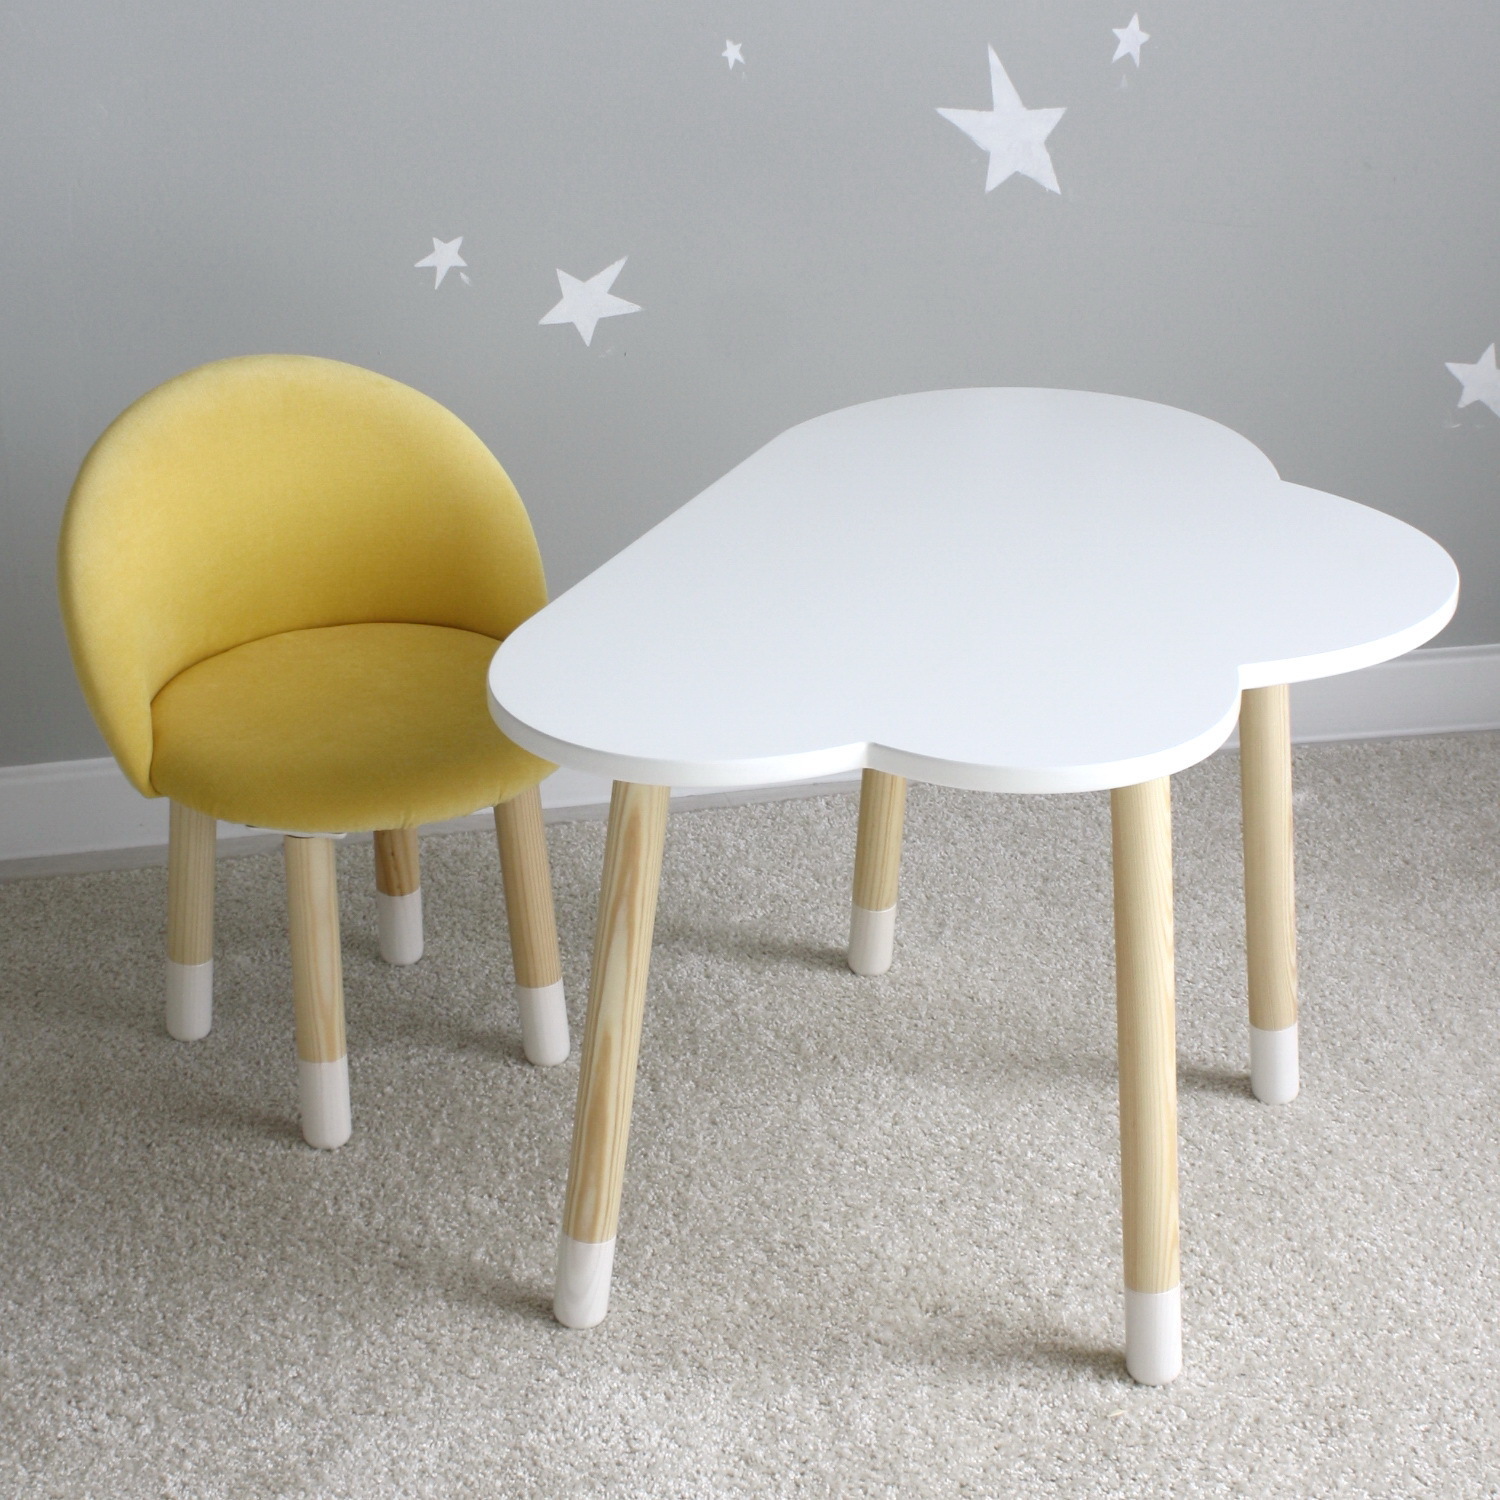 Комплект детской мебели DIMDOM kids Облако белый + Мягкий стульчик Желтый крючок навесной на дверь мебели 2 шт аллюр кдн 1 15 484 белый